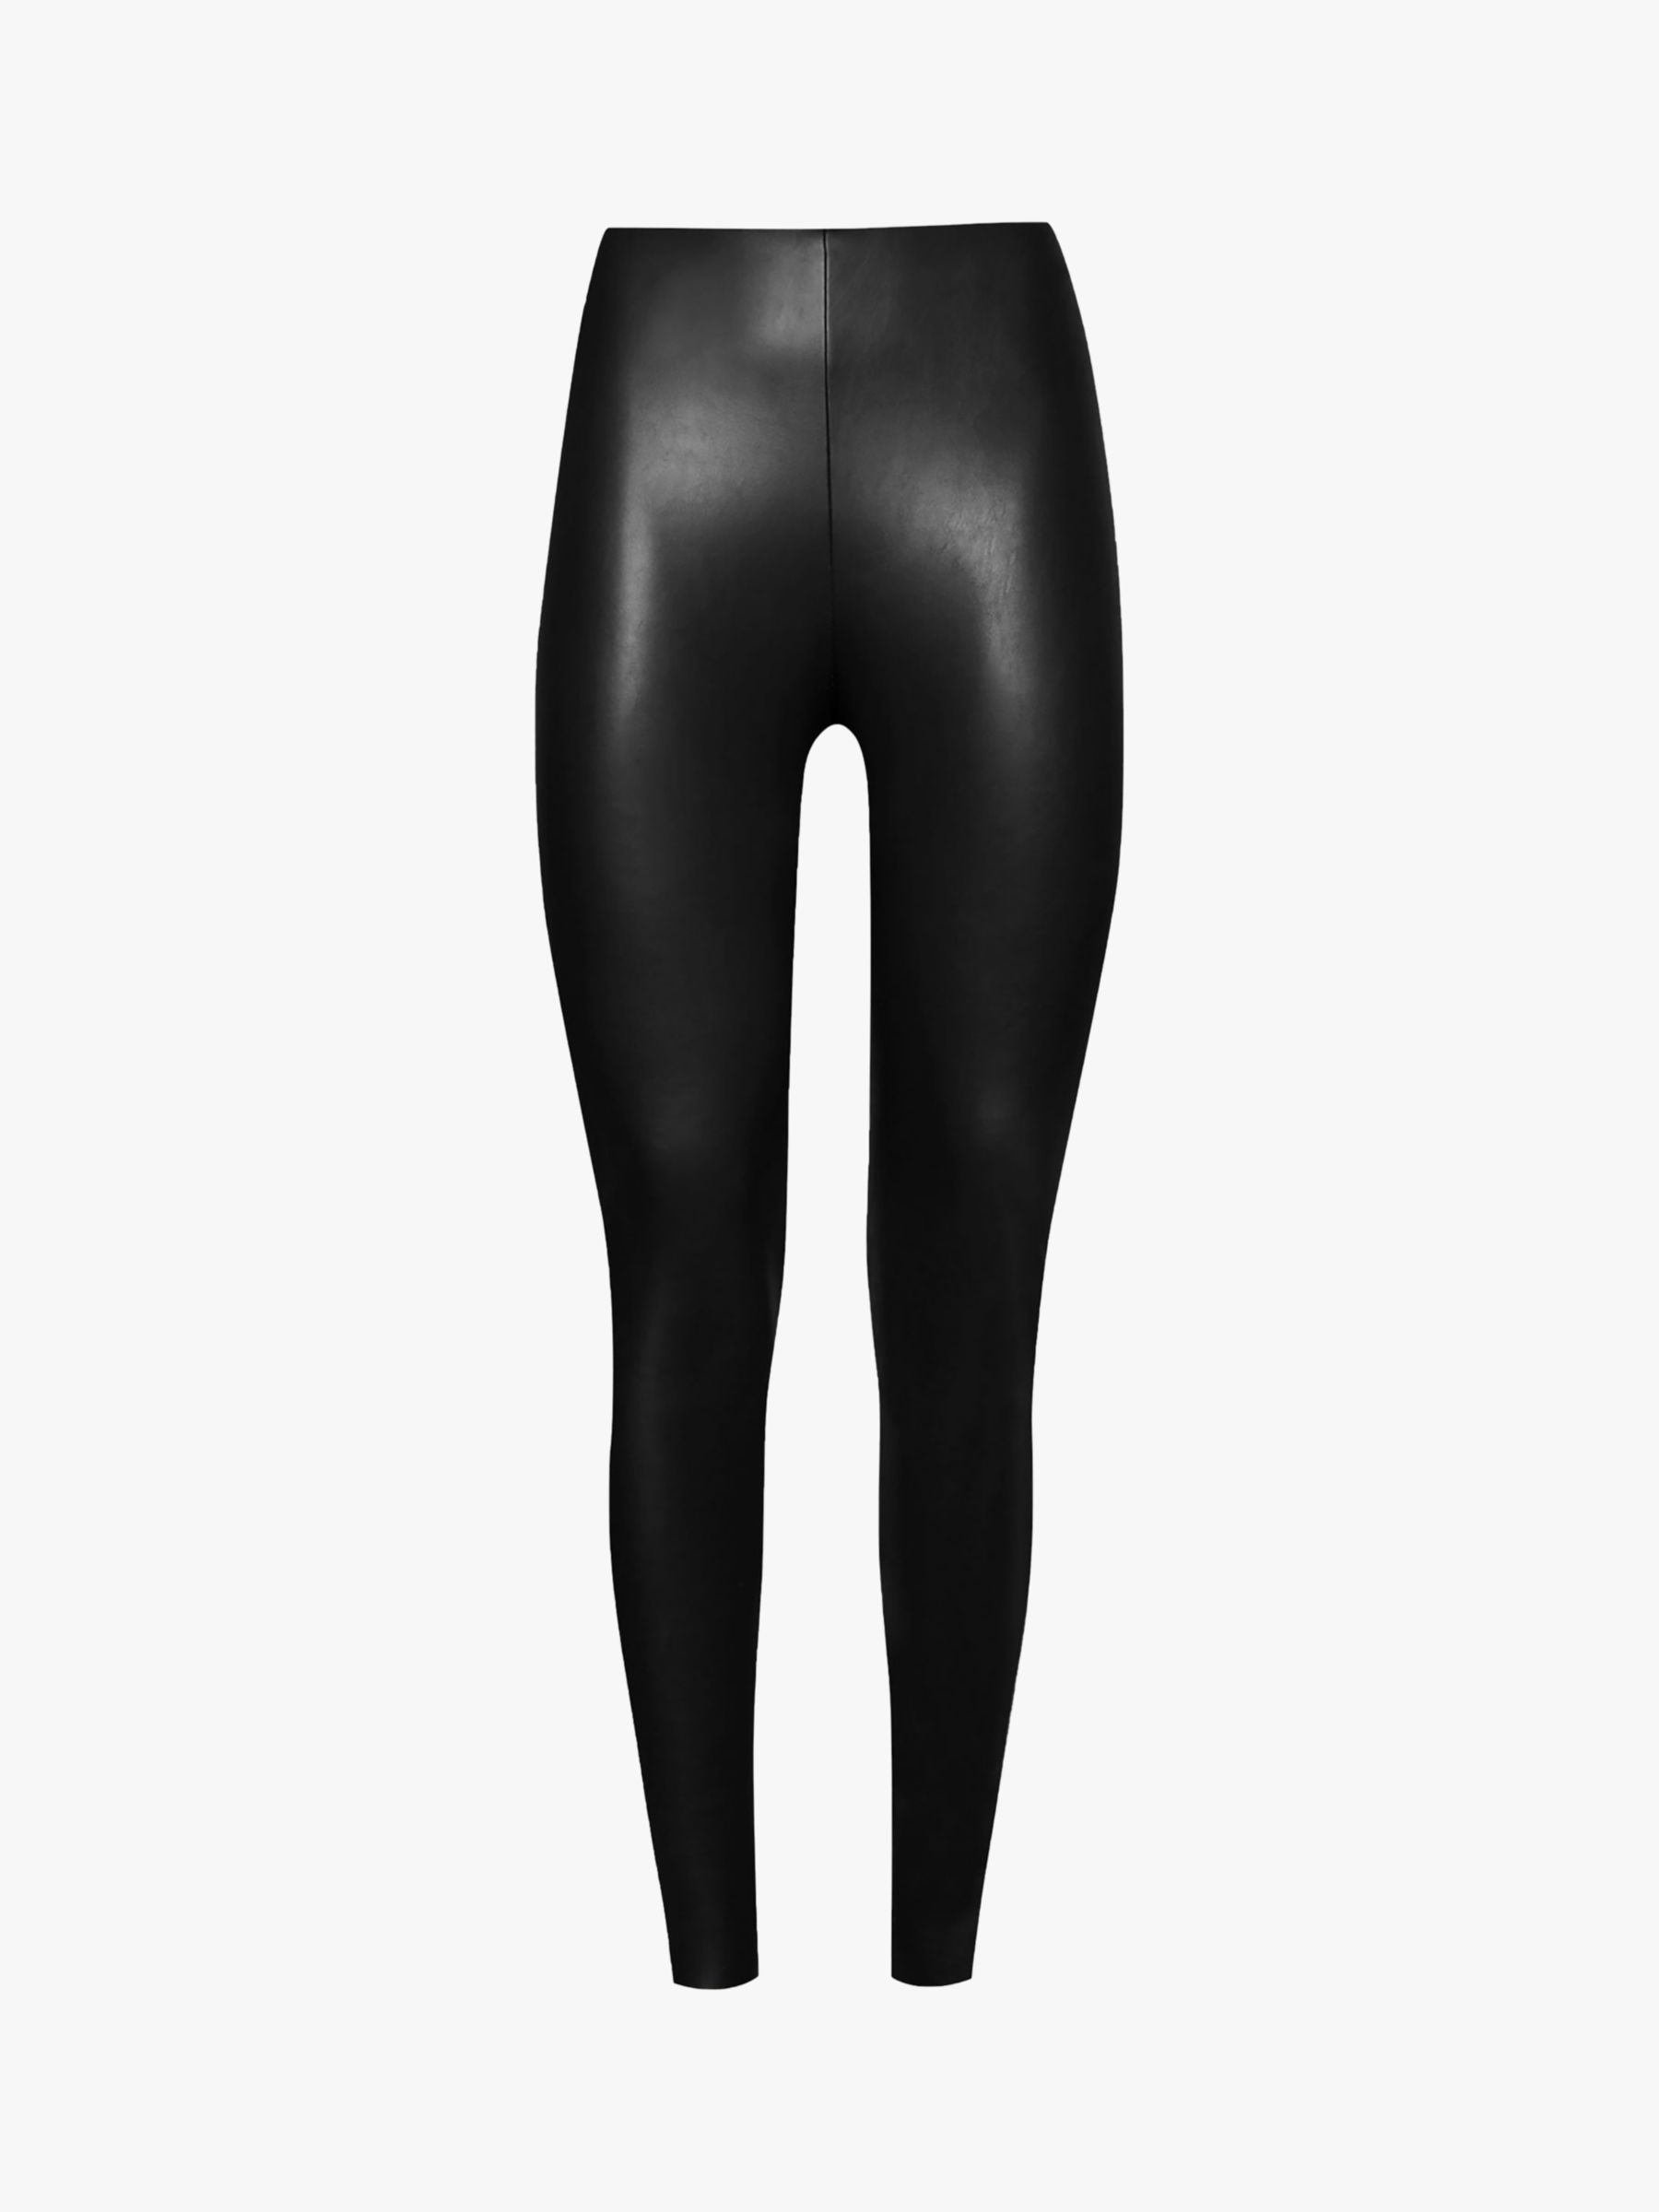 H&M vegan reptile embossed black leather leggings, new UK10 - UK12